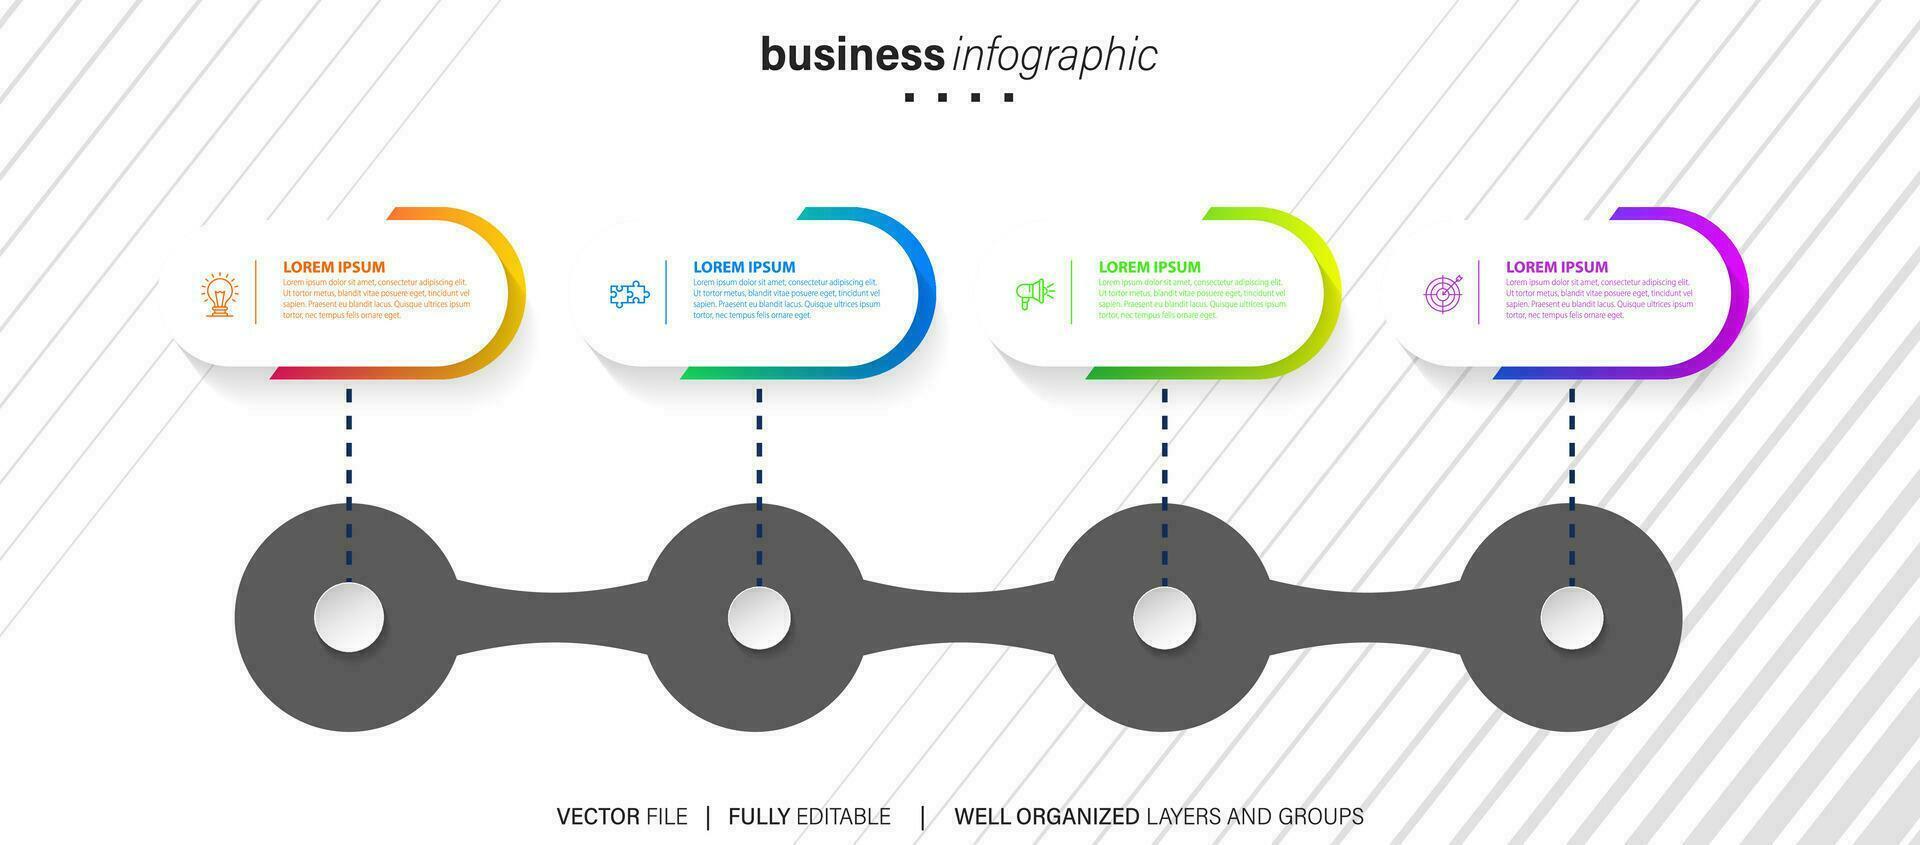 Vektor Infografik Pfeil Design mit 4 Optionen oder Schritte. Infografiken zum Geschäft Konzept. können Sein benutzt zum Präsentationen Banner, Arbeitsablauf Layout, Prozess Diagramm, fließen Diagramm, die Info Graph